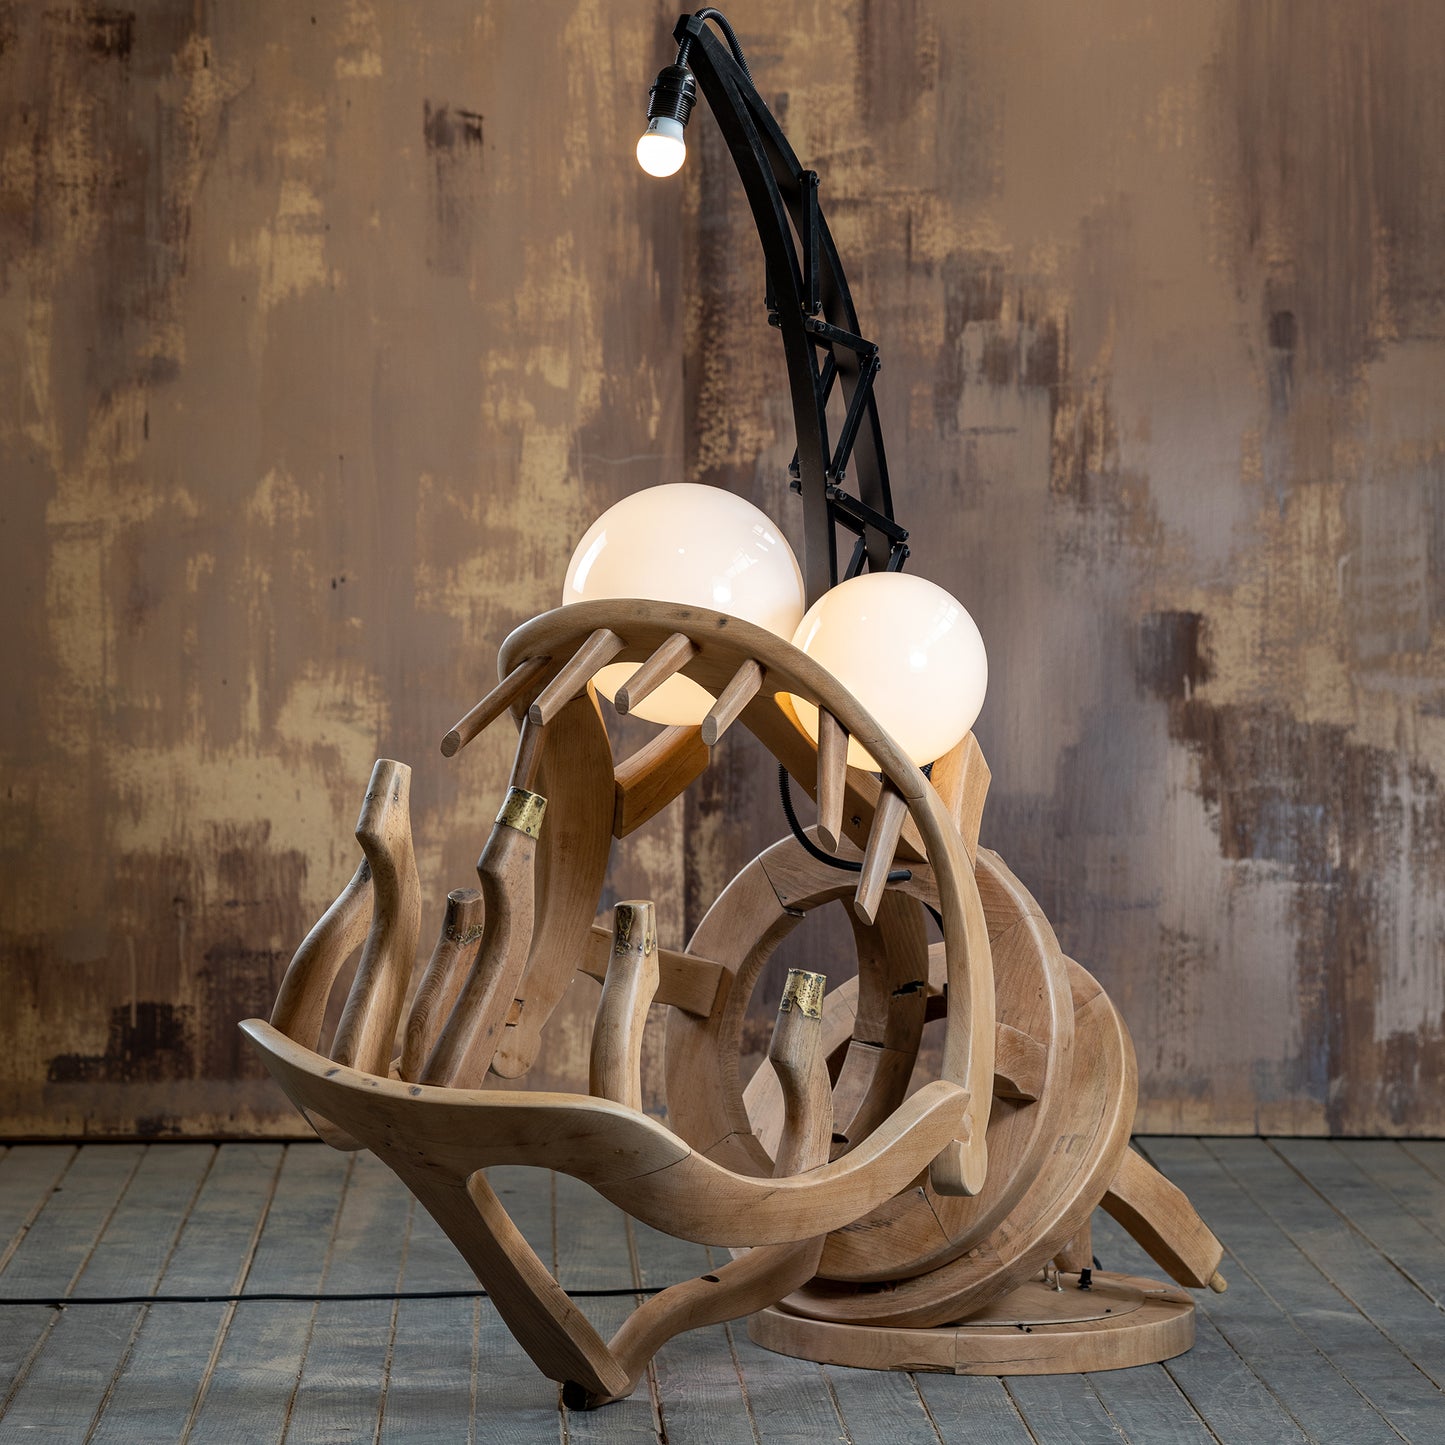 RIBA floor lamp - repurposed chairs sculpture